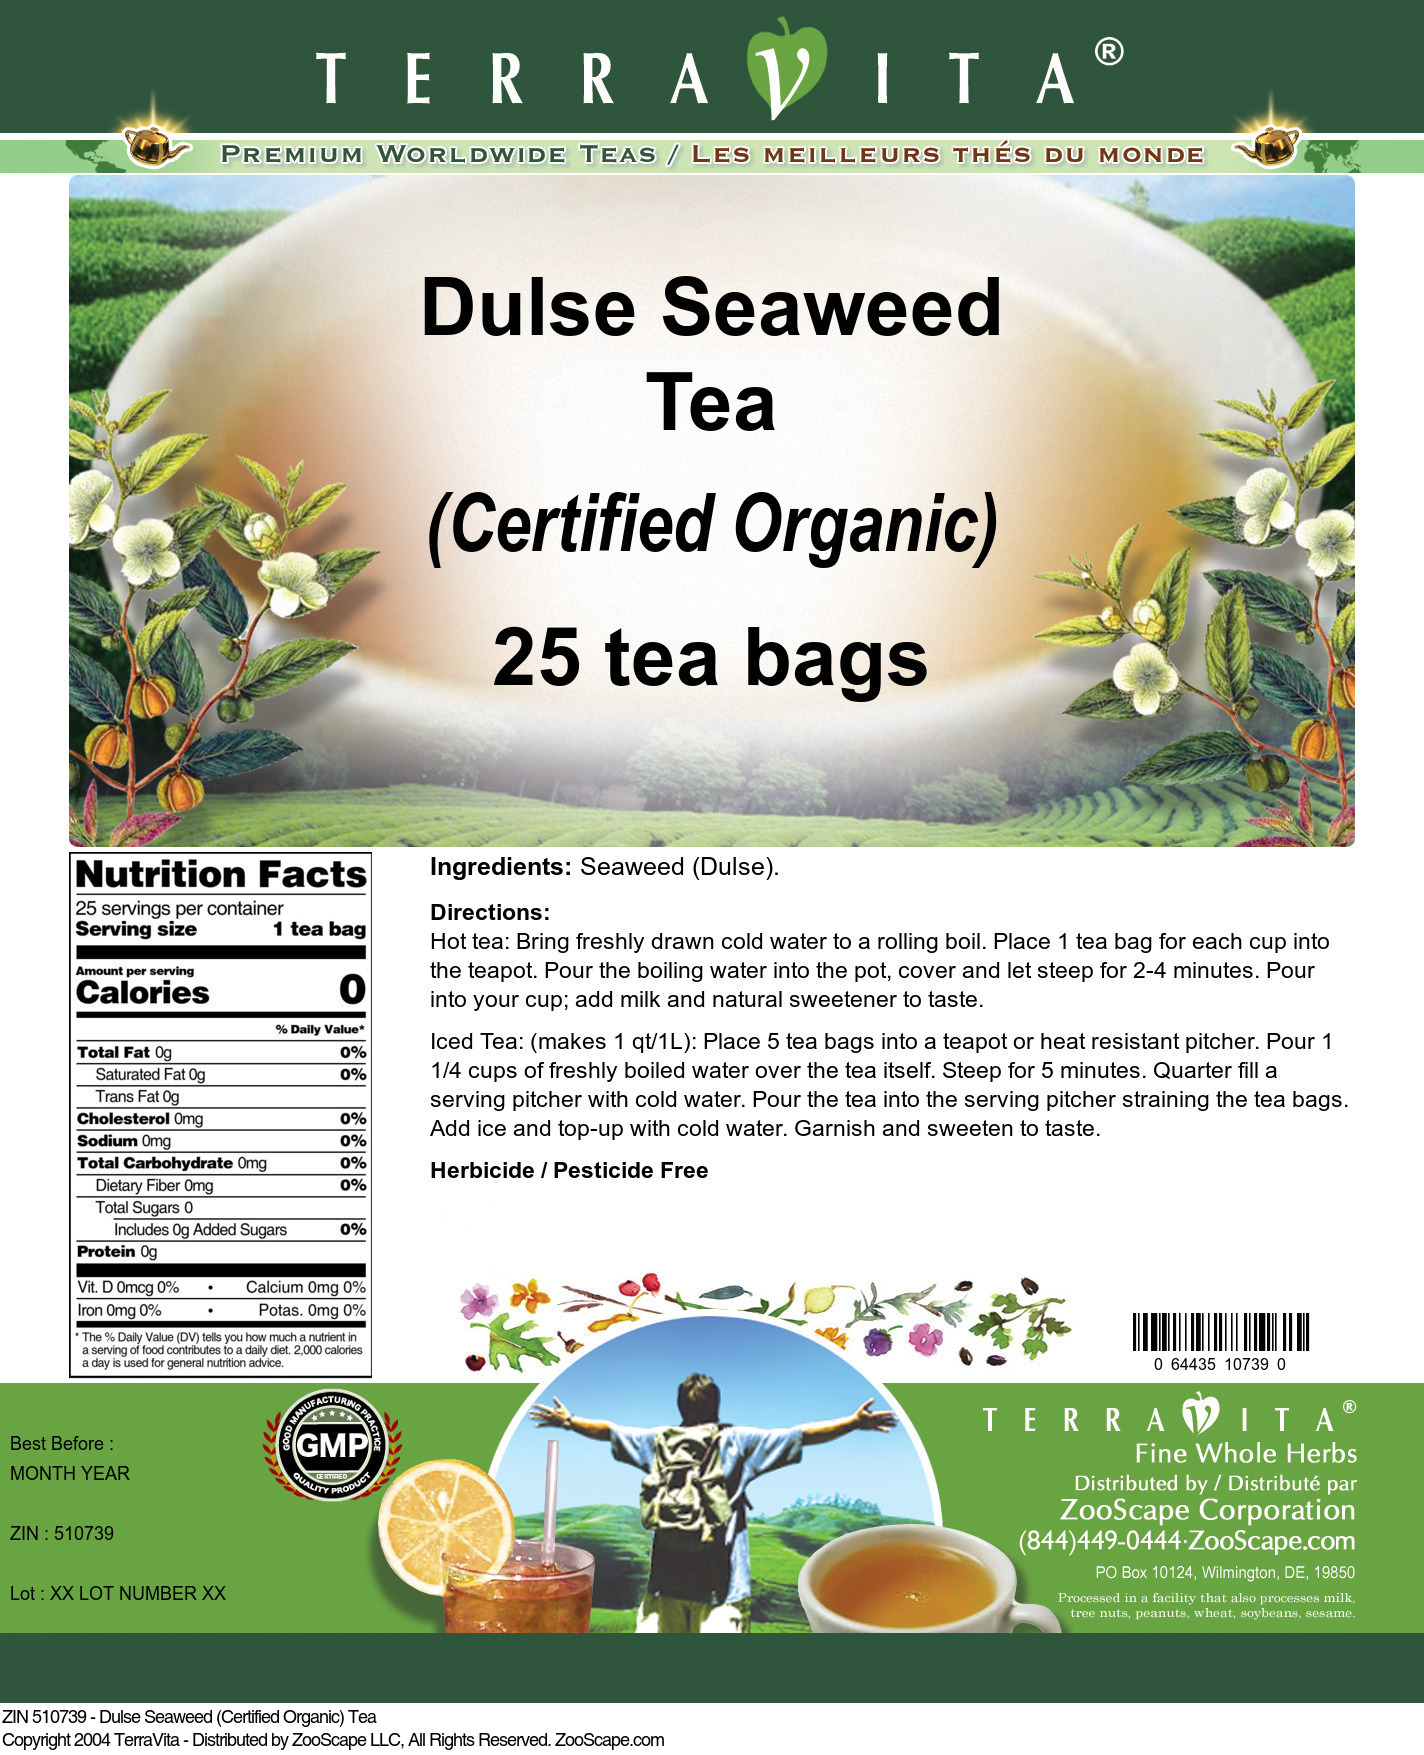 Dulse Seaweed (Certified Organic) Tea - Label